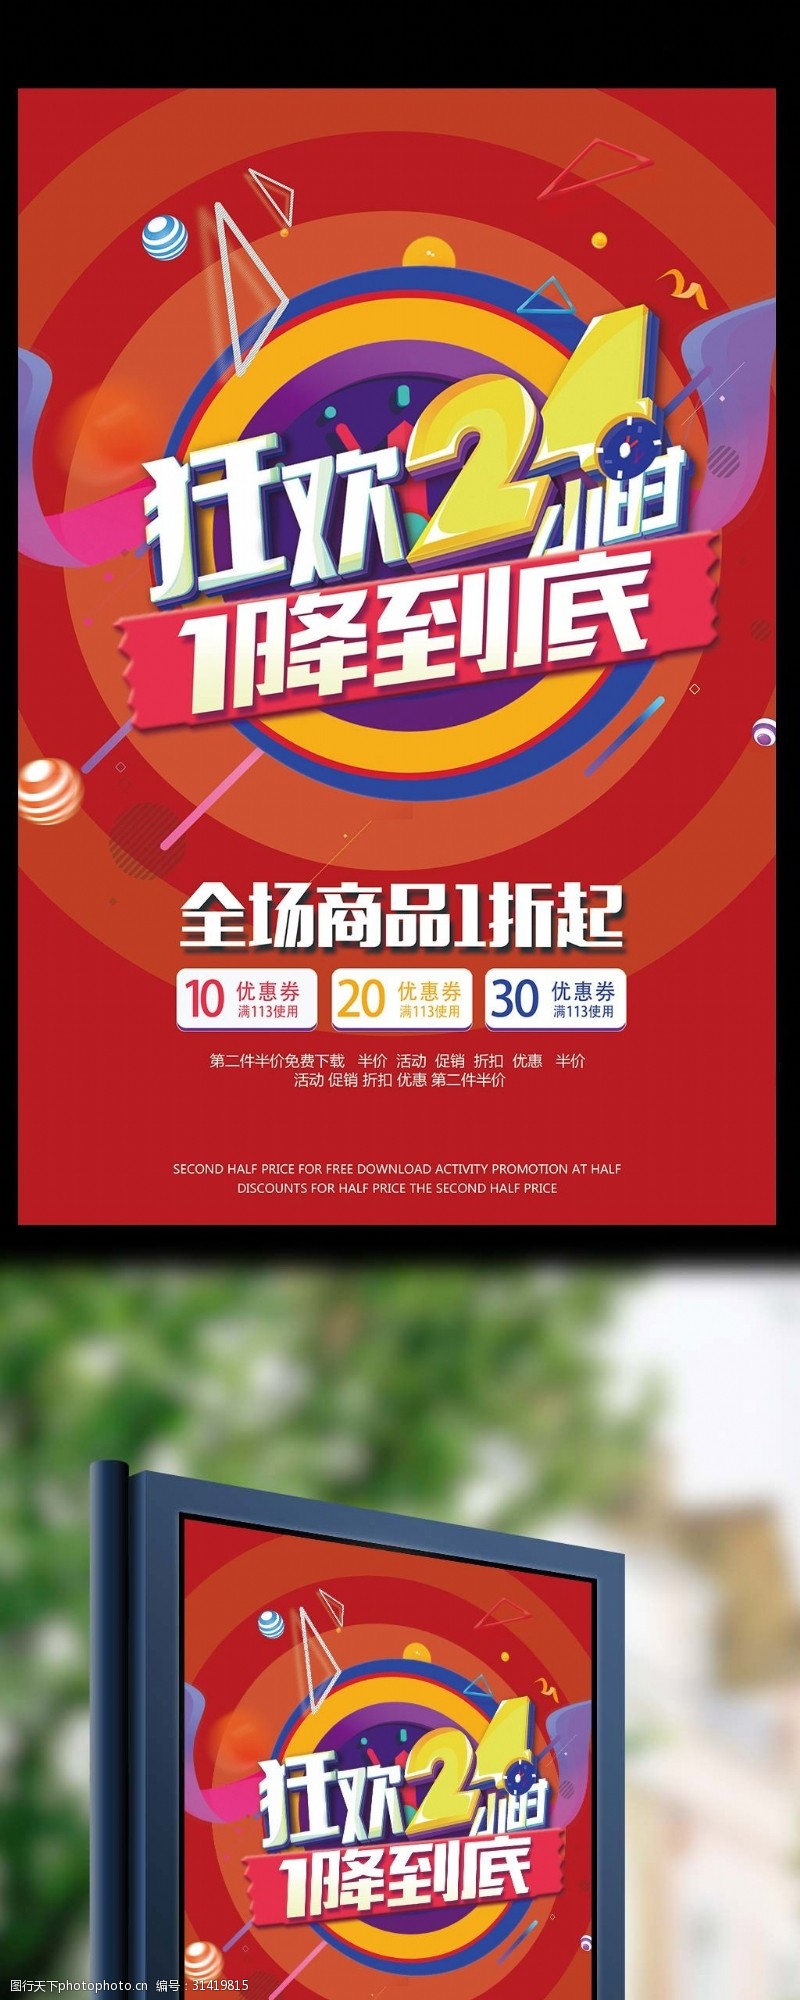 2017创意合成炫彩促销海报